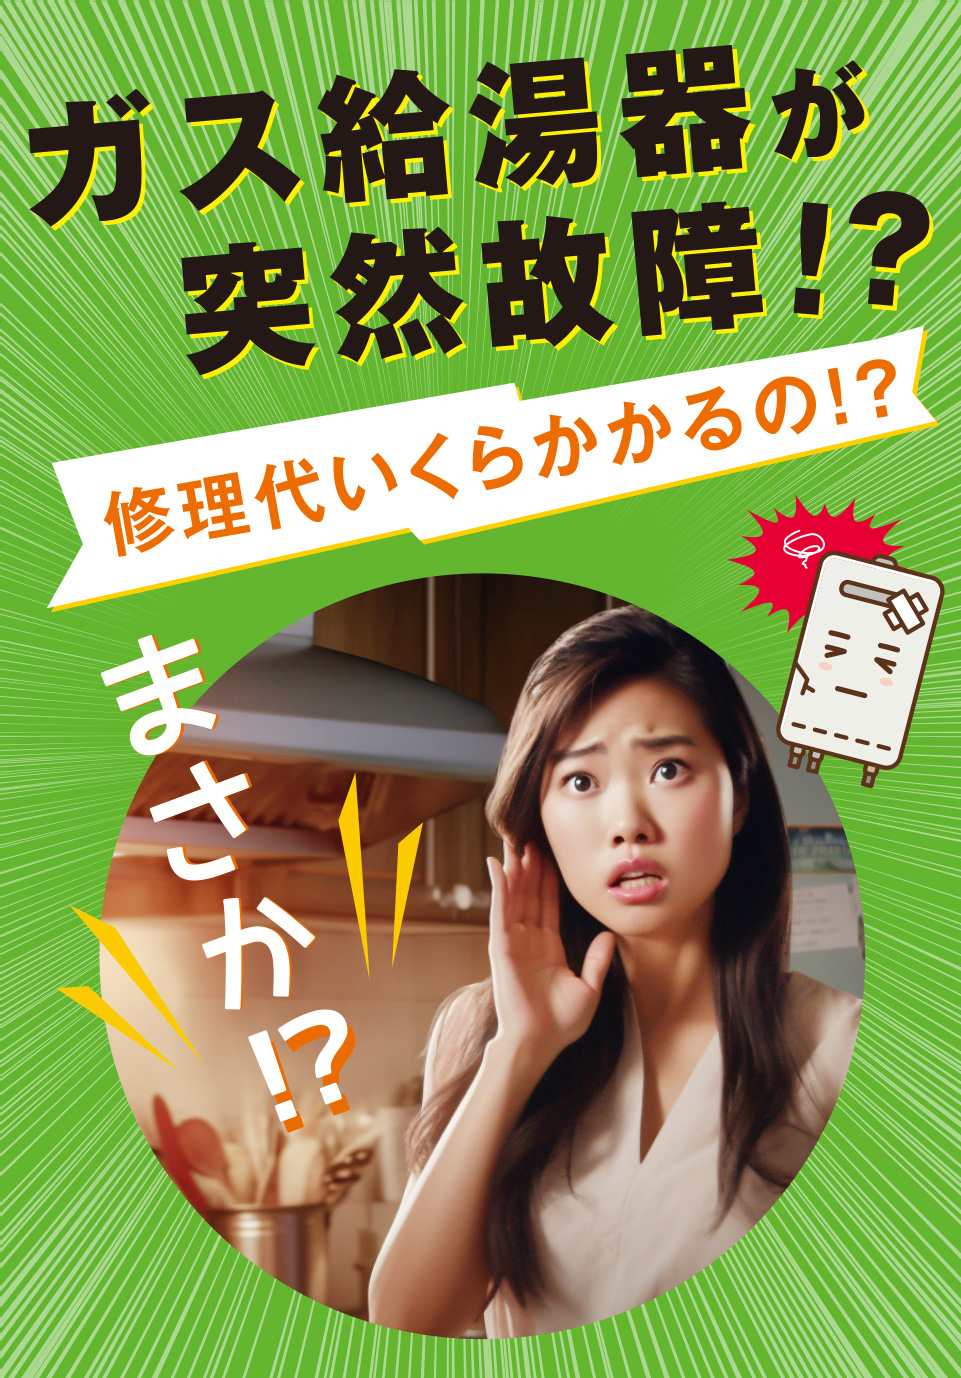 神奈川県横浜市 緑区の皆さま！ガス給湯器の故障でお困りですか？